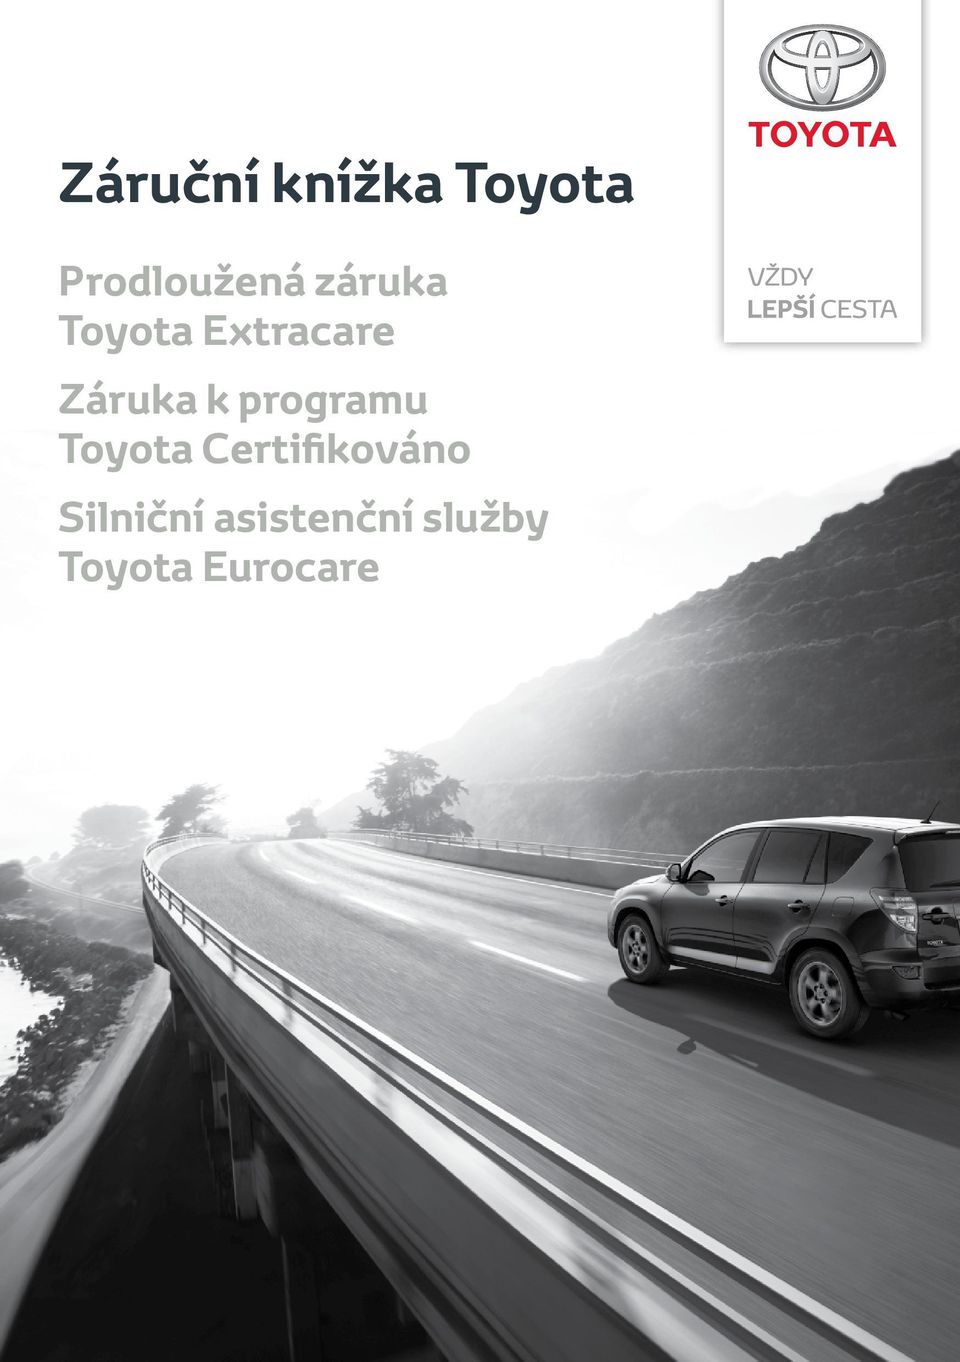 programu Toyota Certifikováno